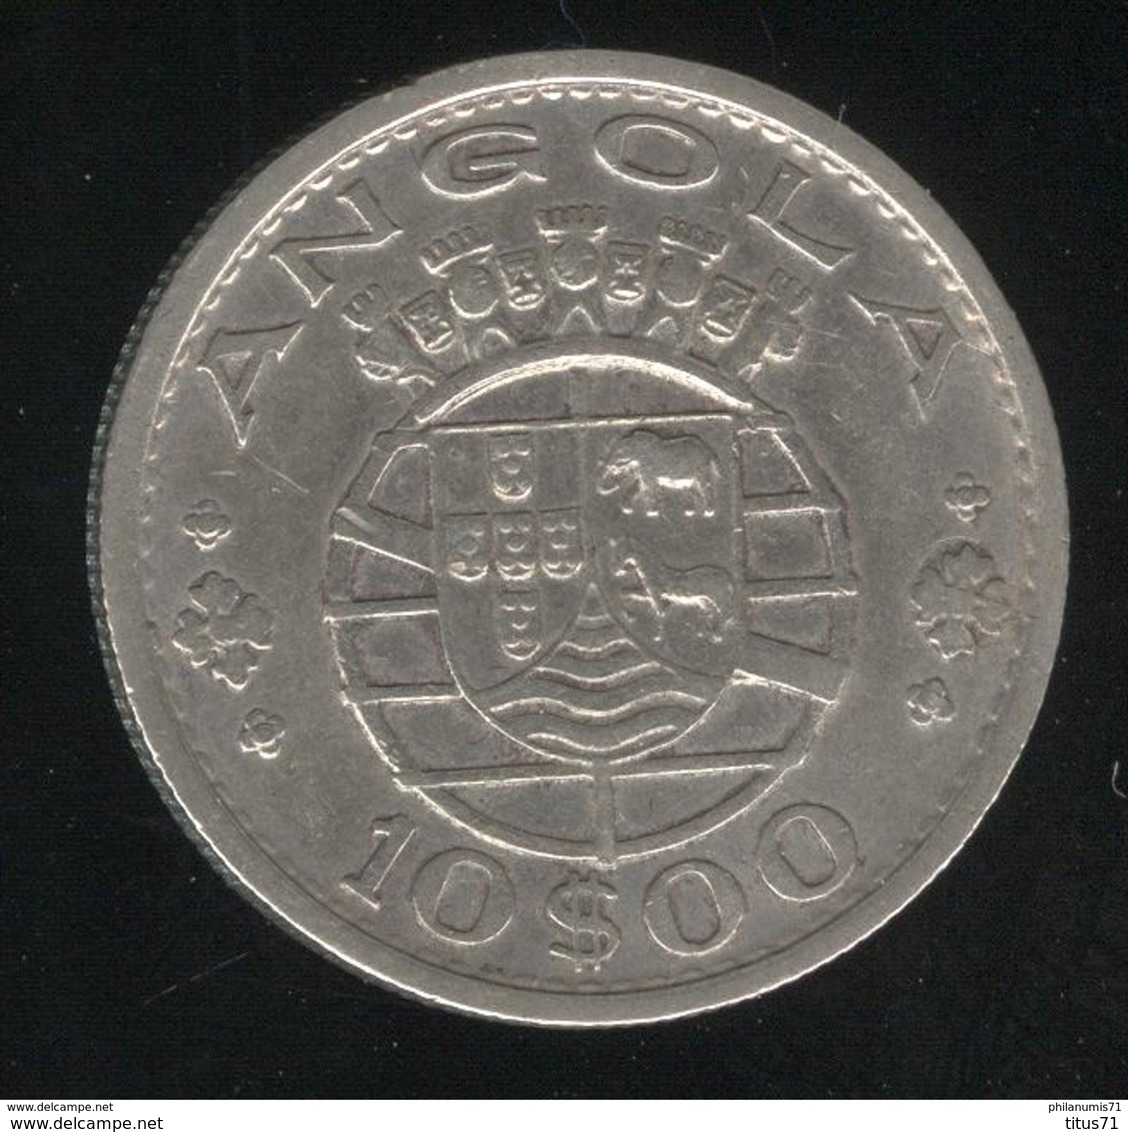 10 Escudos Angola 1952 - Colonie Portugaise / Portuguese Colony - TTB - Portogallo